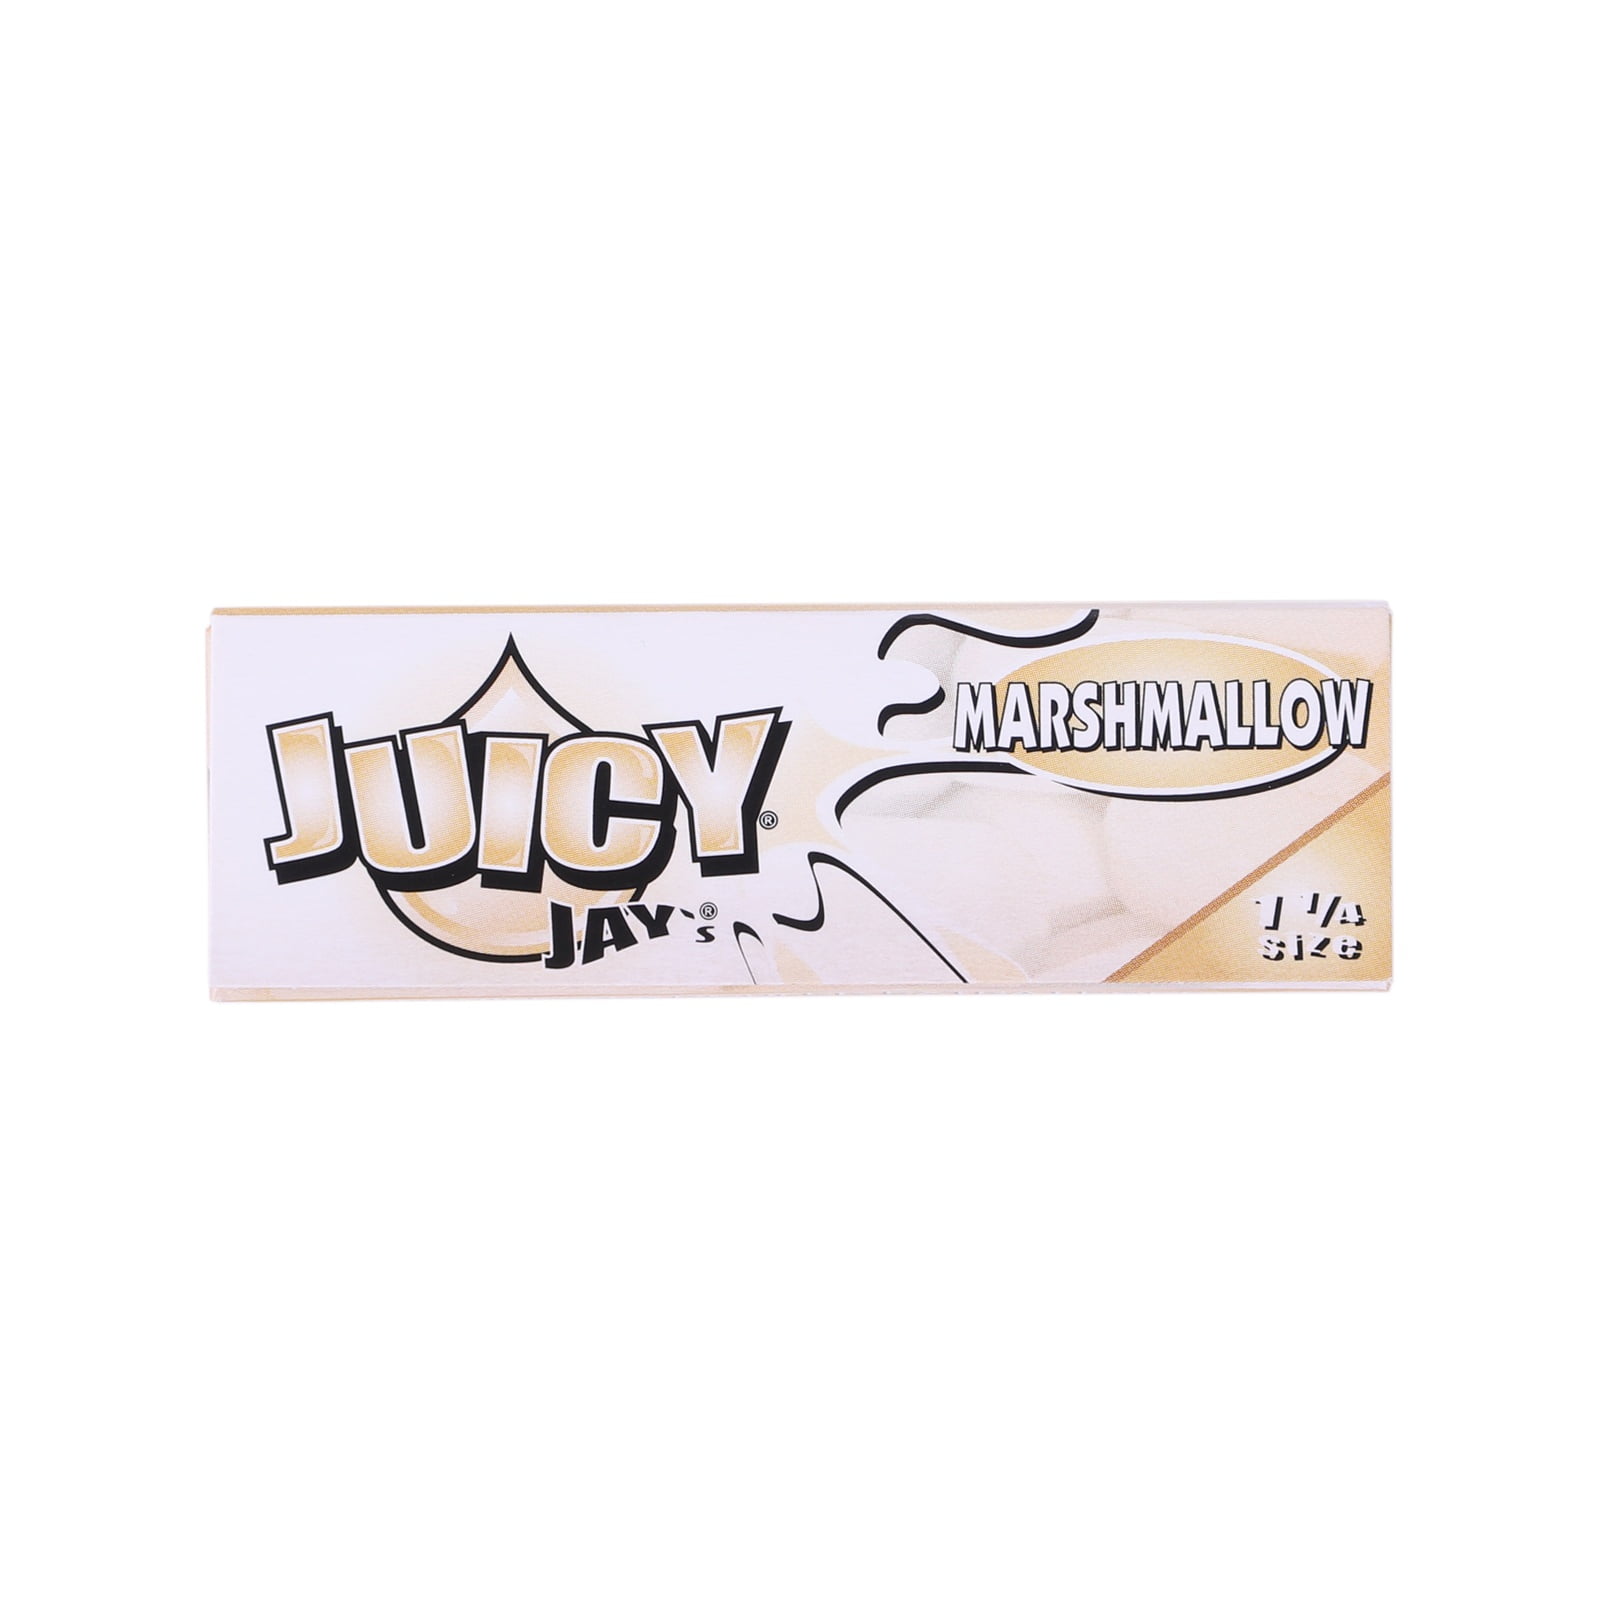 Бумажки Juicy Jay’s Marshmallow 1¼